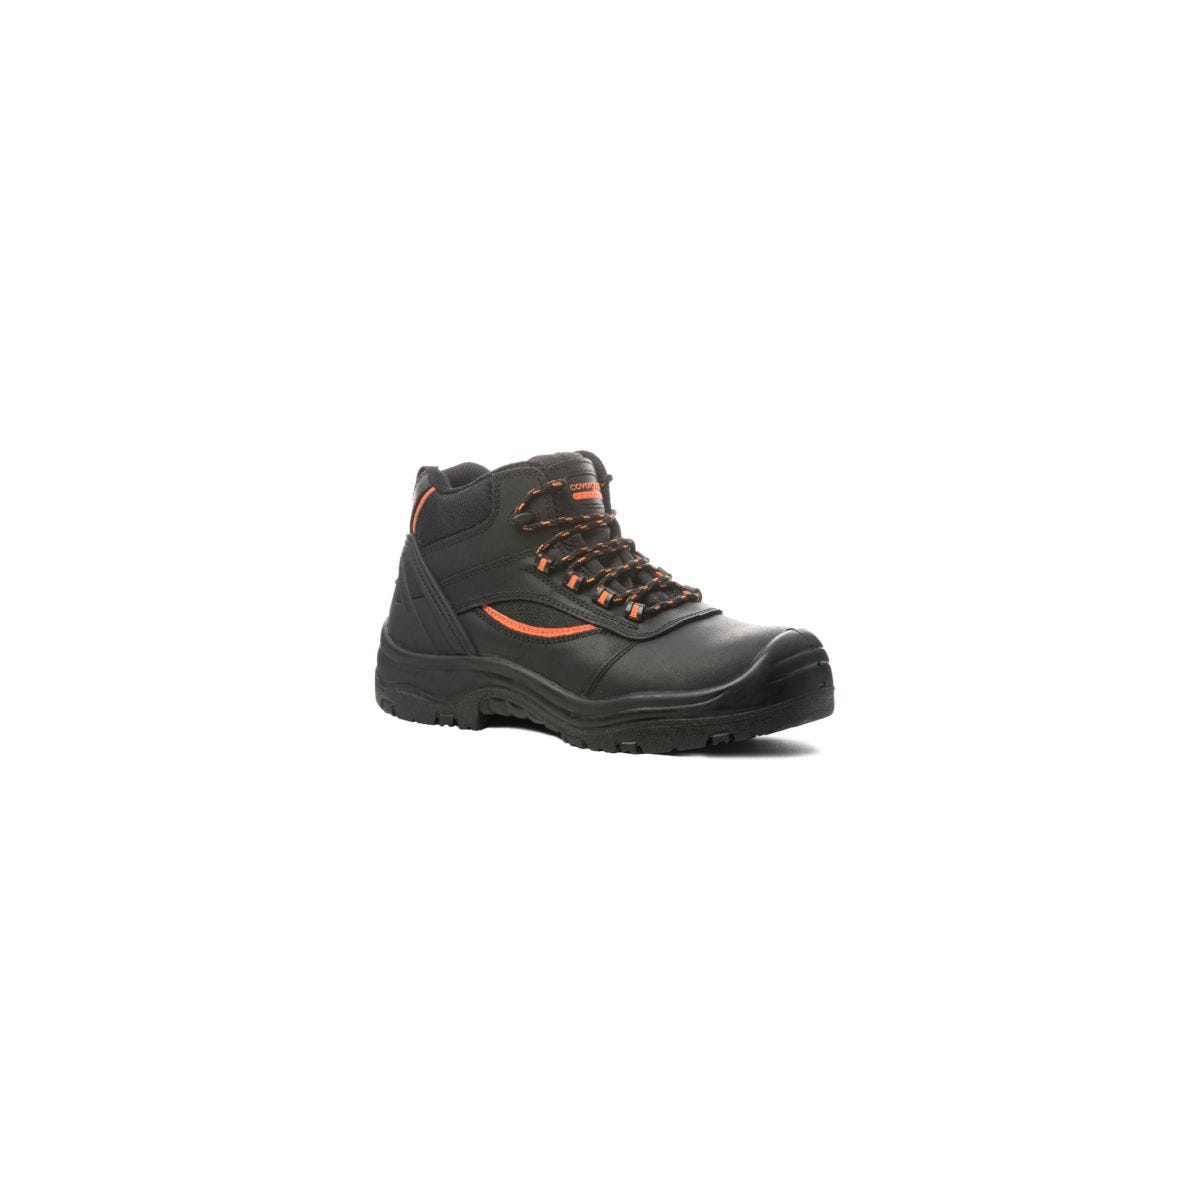 Chaussure de sécurité PEARL HIGH haute noire S3 SRC - COVERGUARD - Taille 44 0